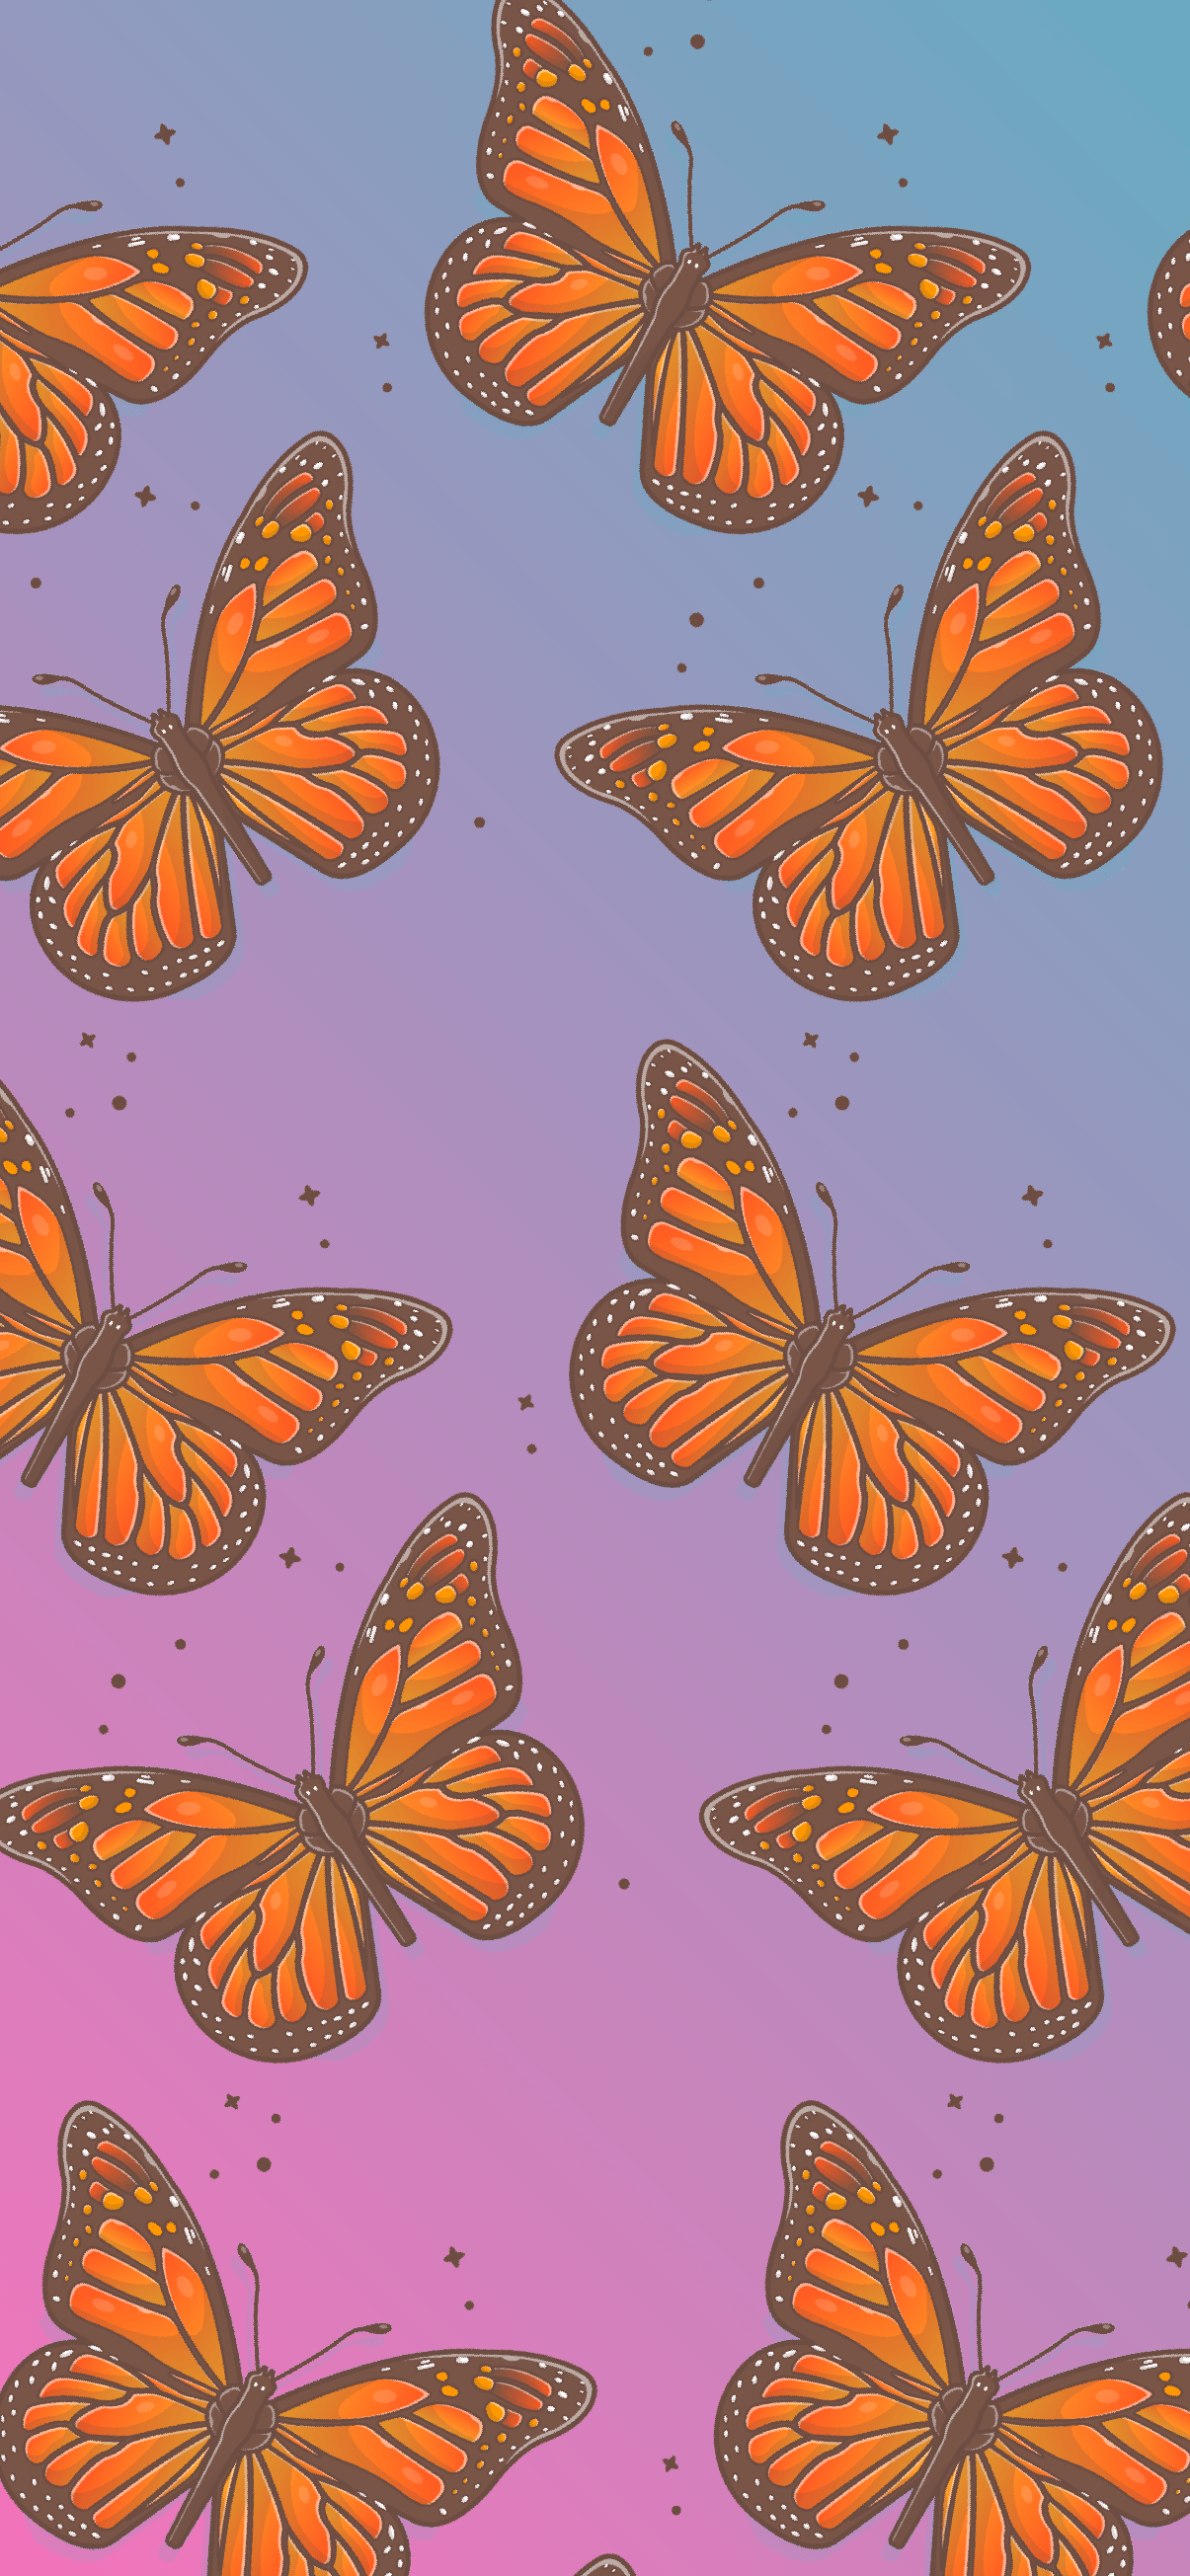 Butterfly pattern wallpaper aesthetic